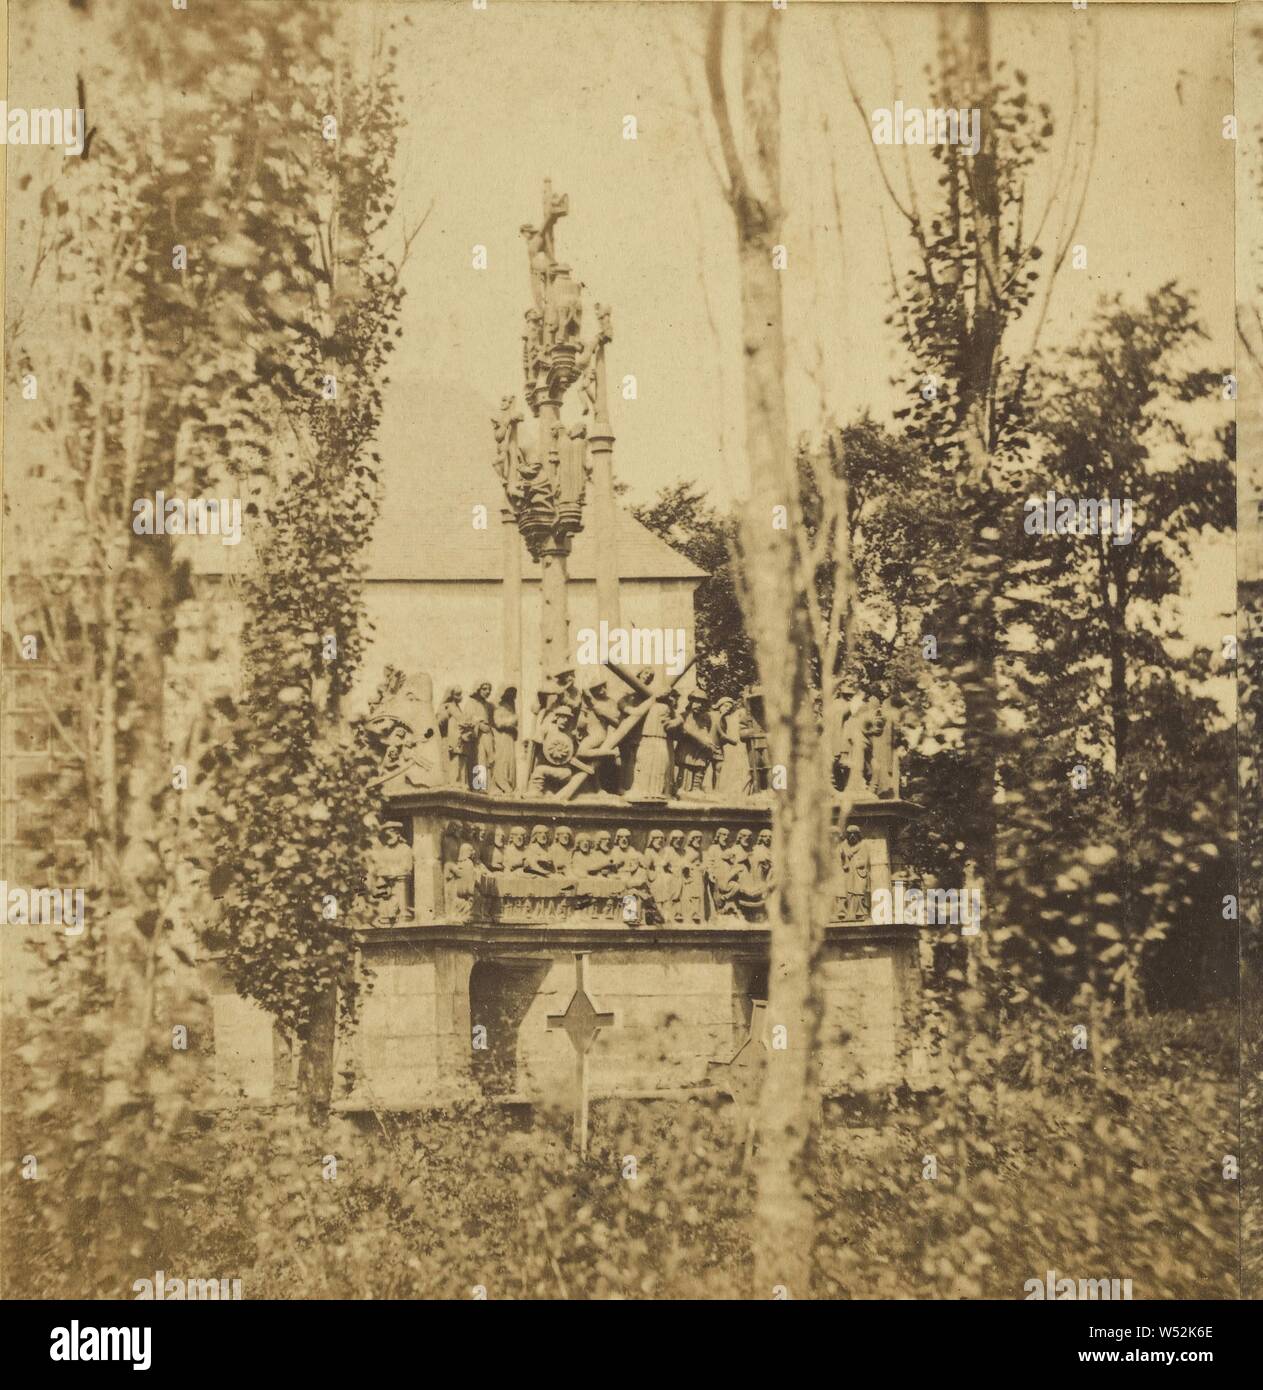 Voyage en Bretagne. Plougastel-Daulas (Finistere) Le Calvaire. - Cote de la sacristie., Attributed to Aine Lafage (French, active 1860s), about 1860, Albumen silver print Stock Photo